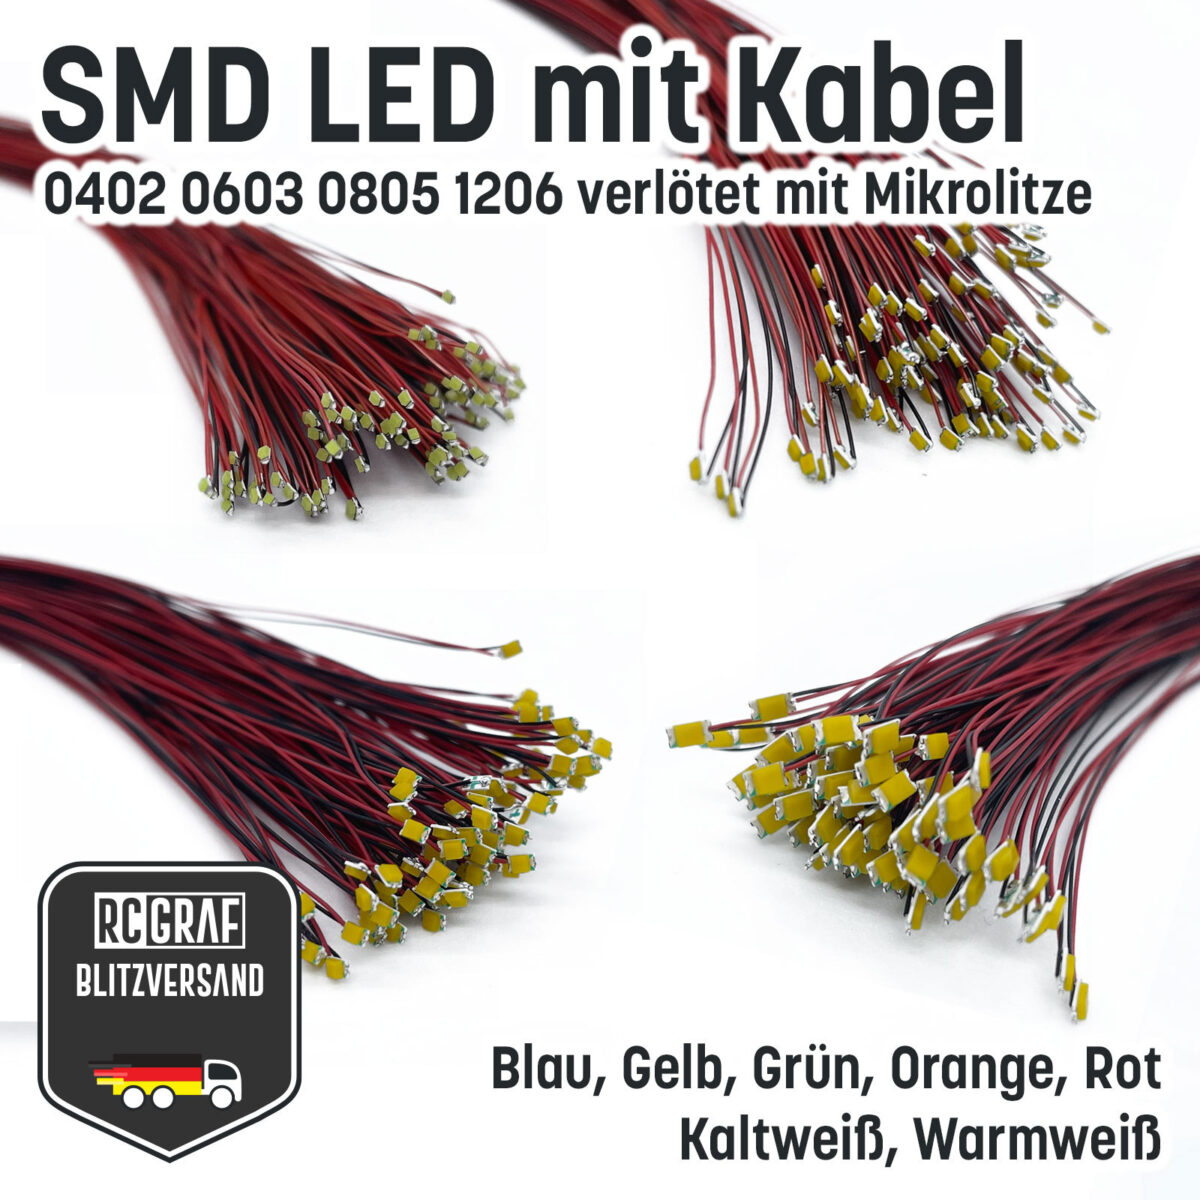 SMD LED 0402 0603 0805 1206 Microlitze 30cm verlötet 